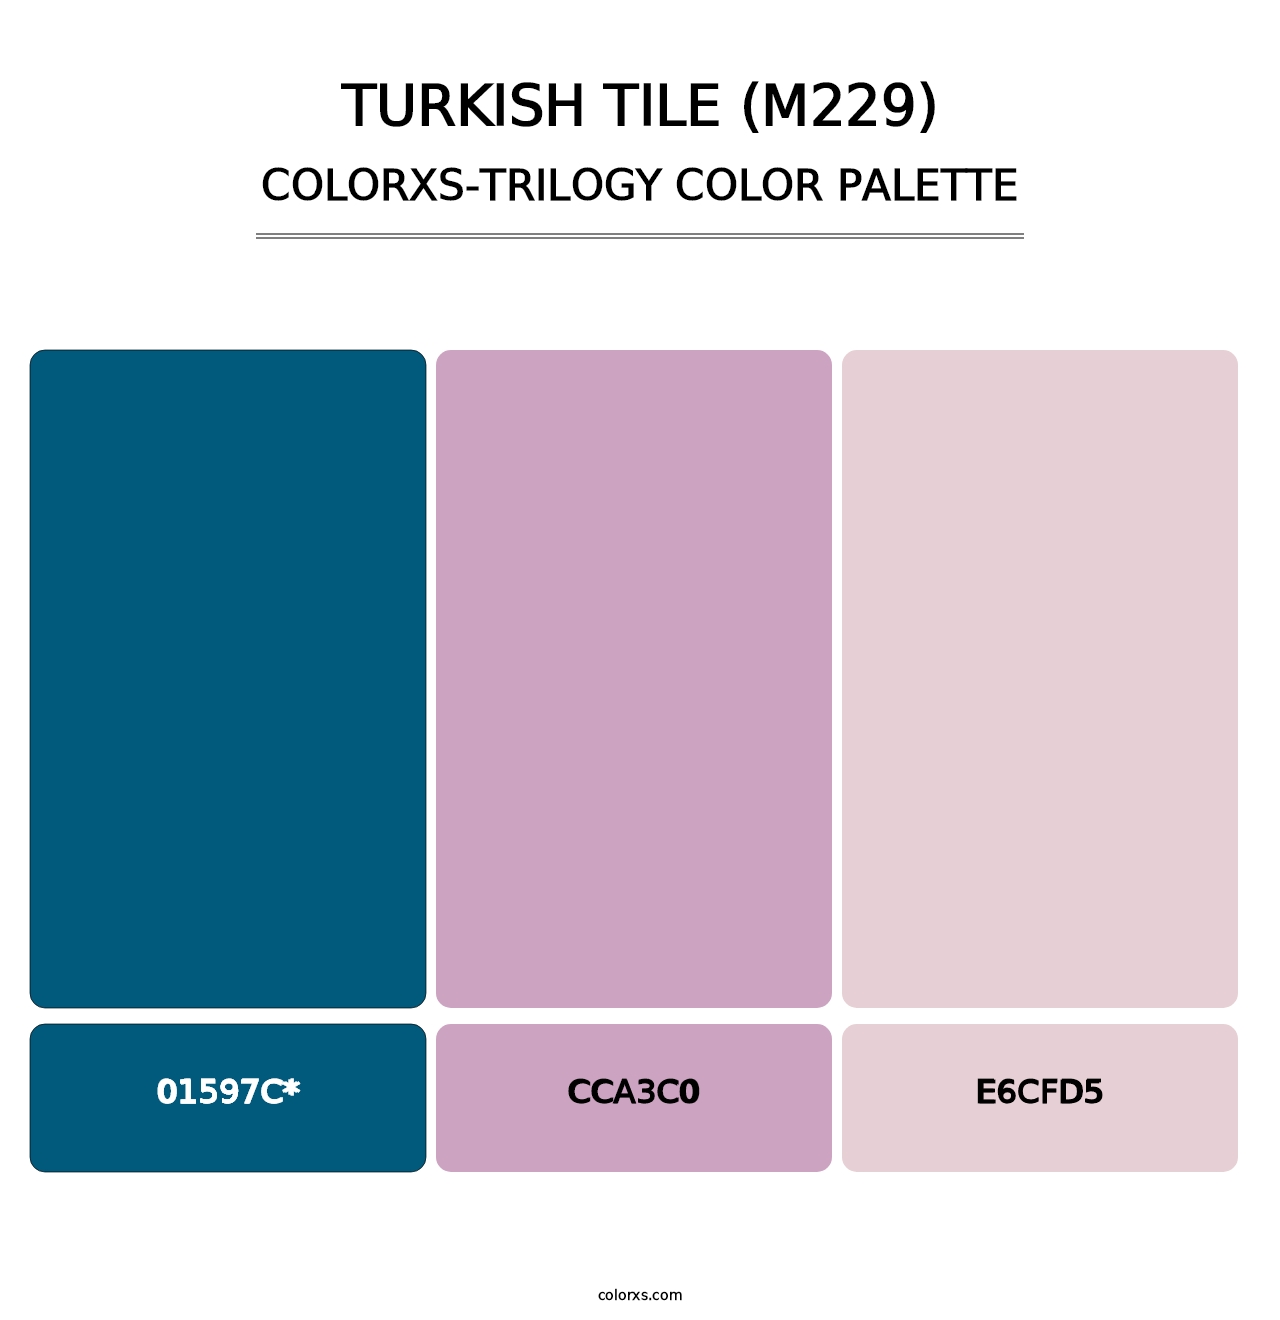 Turkish Tile (M229) - Colorxs Trilogy Palette